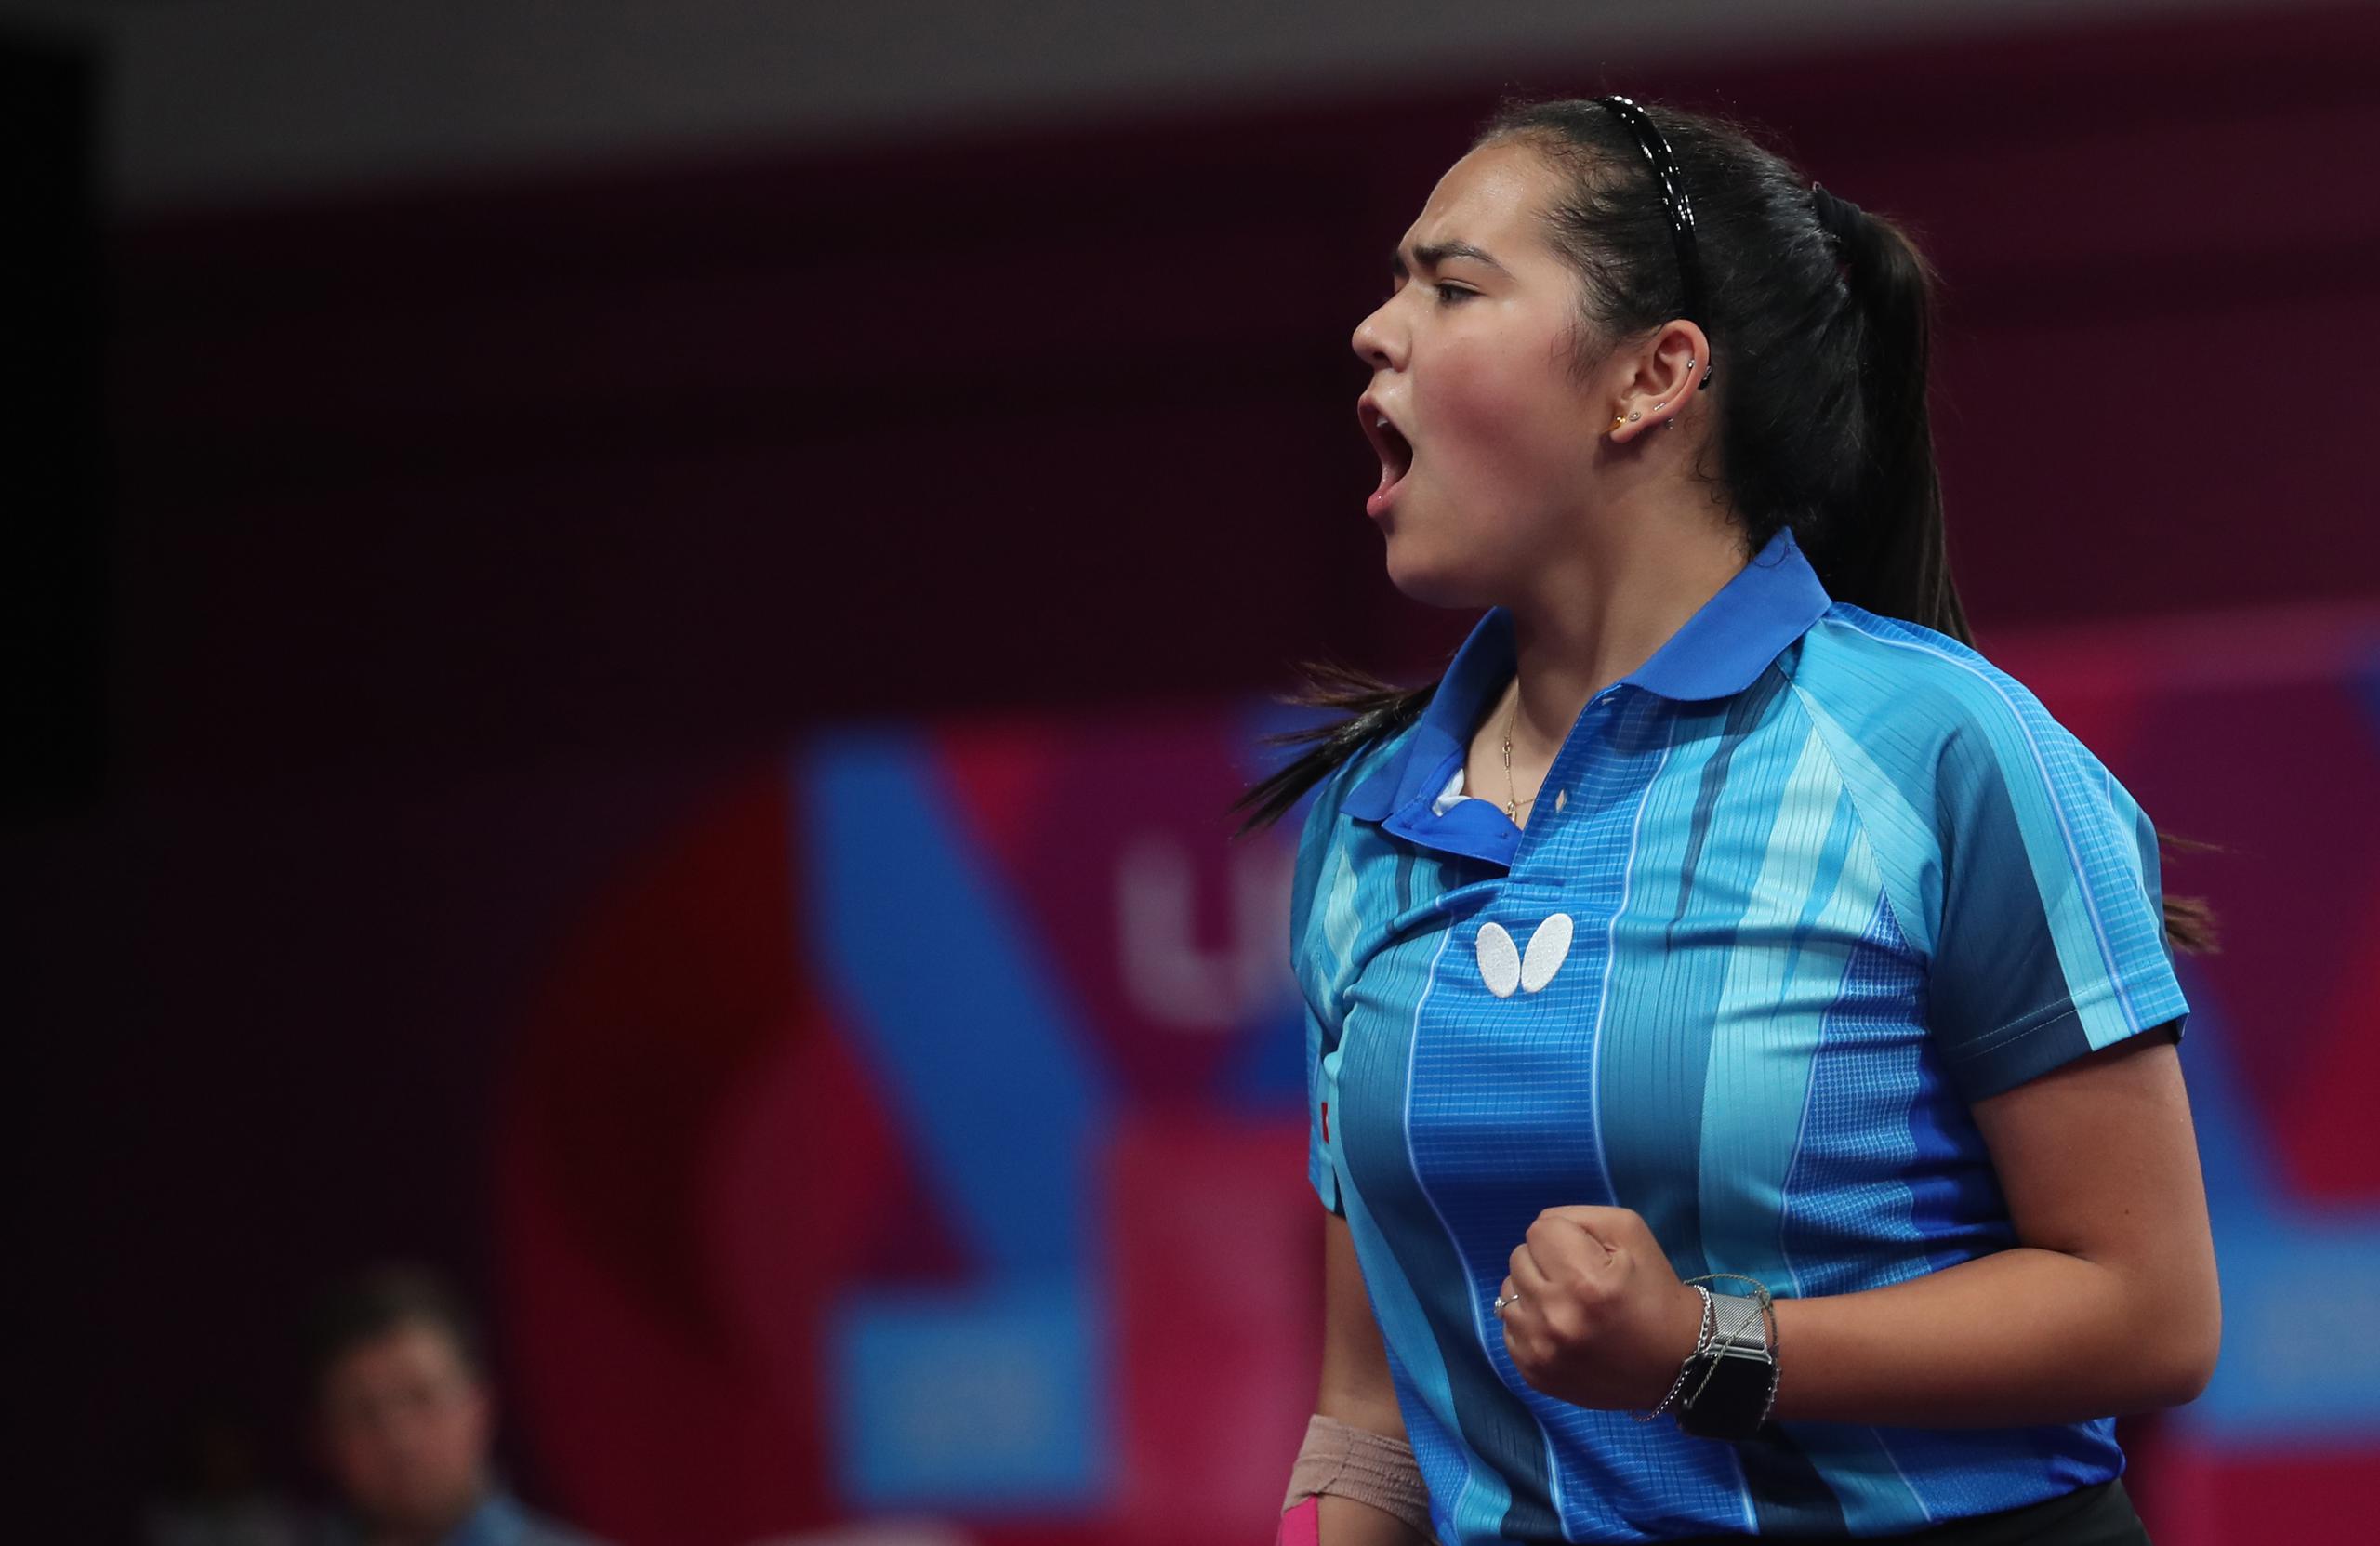 Adriana Díaz cerró bien el año con un Campeonato Panamericano y unos octavos de final en el Campeonato Mundial.

